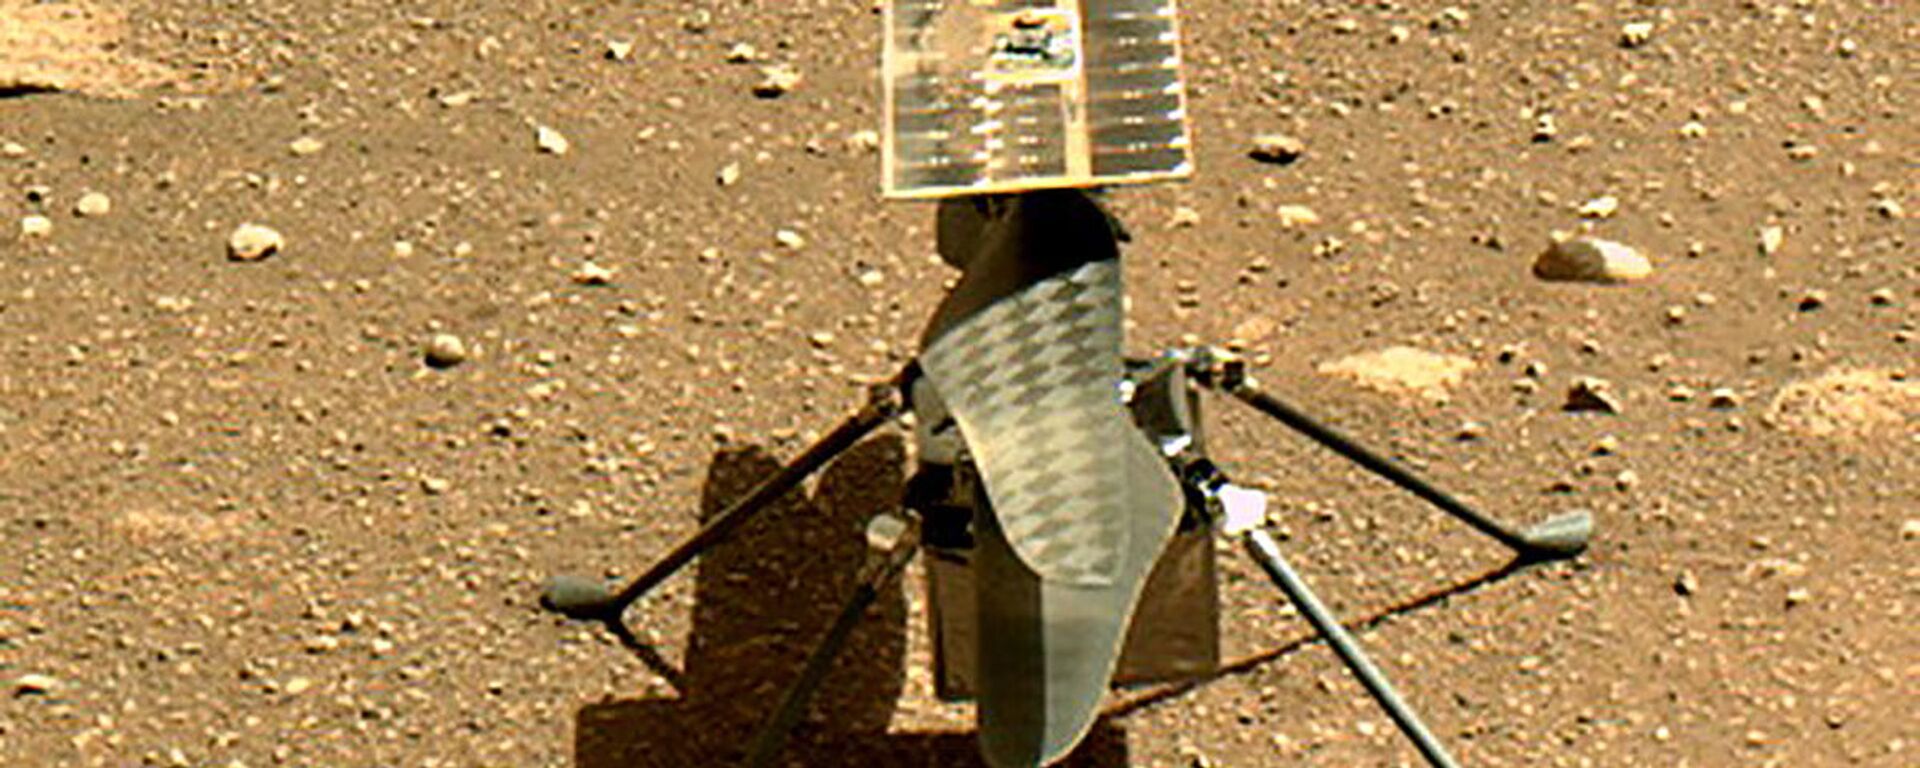 وكالة الفضاء الأمريكية ناسا تطلق أول طائرة حوامة إنجينيويتي فوق سطح كوكب المريخ - سبوتنيك عربي, 1920, 26.09.2021